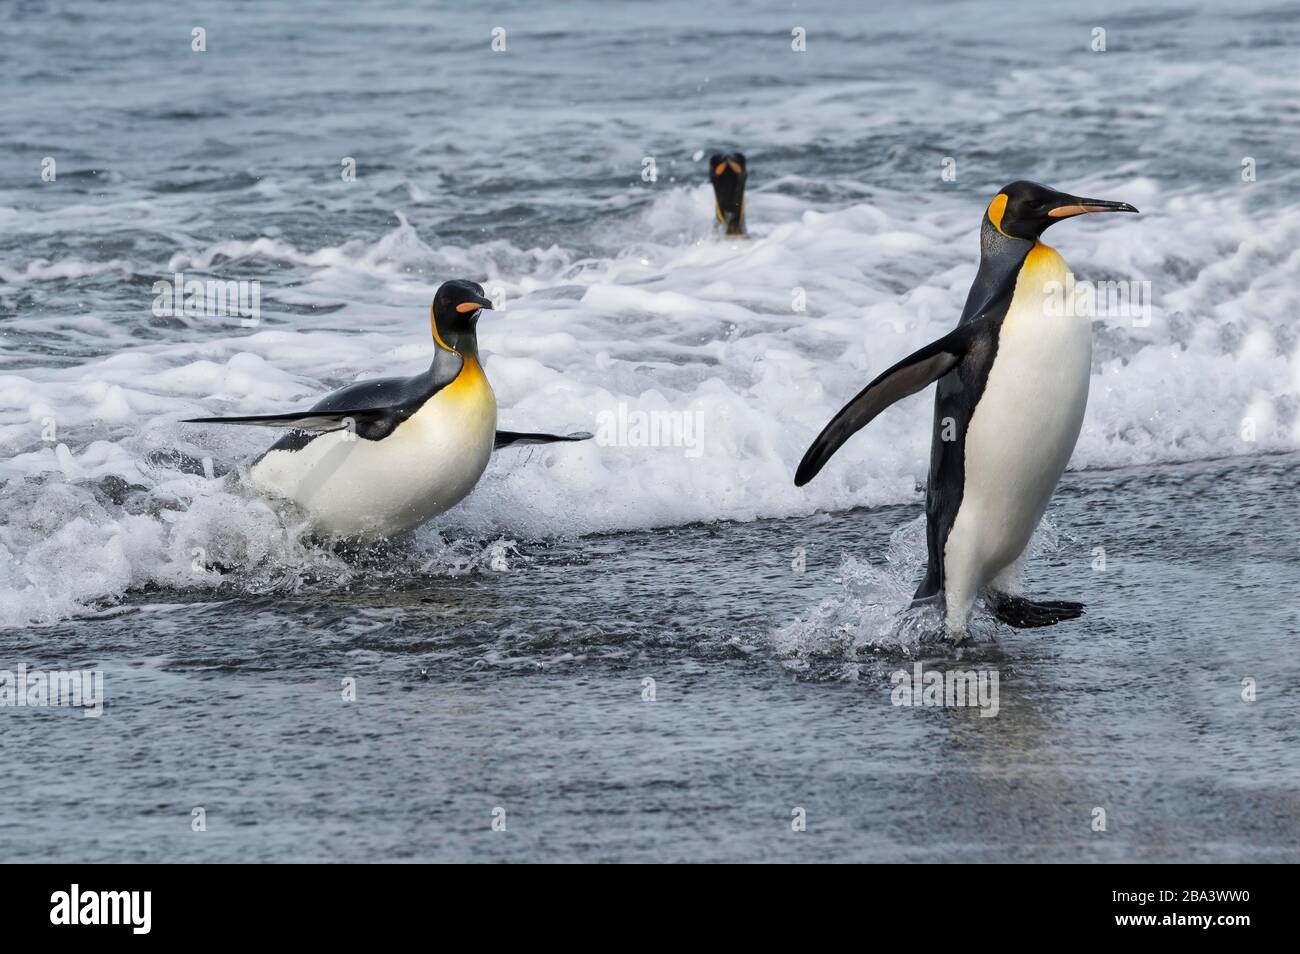 Groupe des pingouins du roi (Aptenodytes patagonicus) sortant de l'eau, plaine de Salisbury, Ile de Géorgie du Sud, Antarctique Banque D'Images